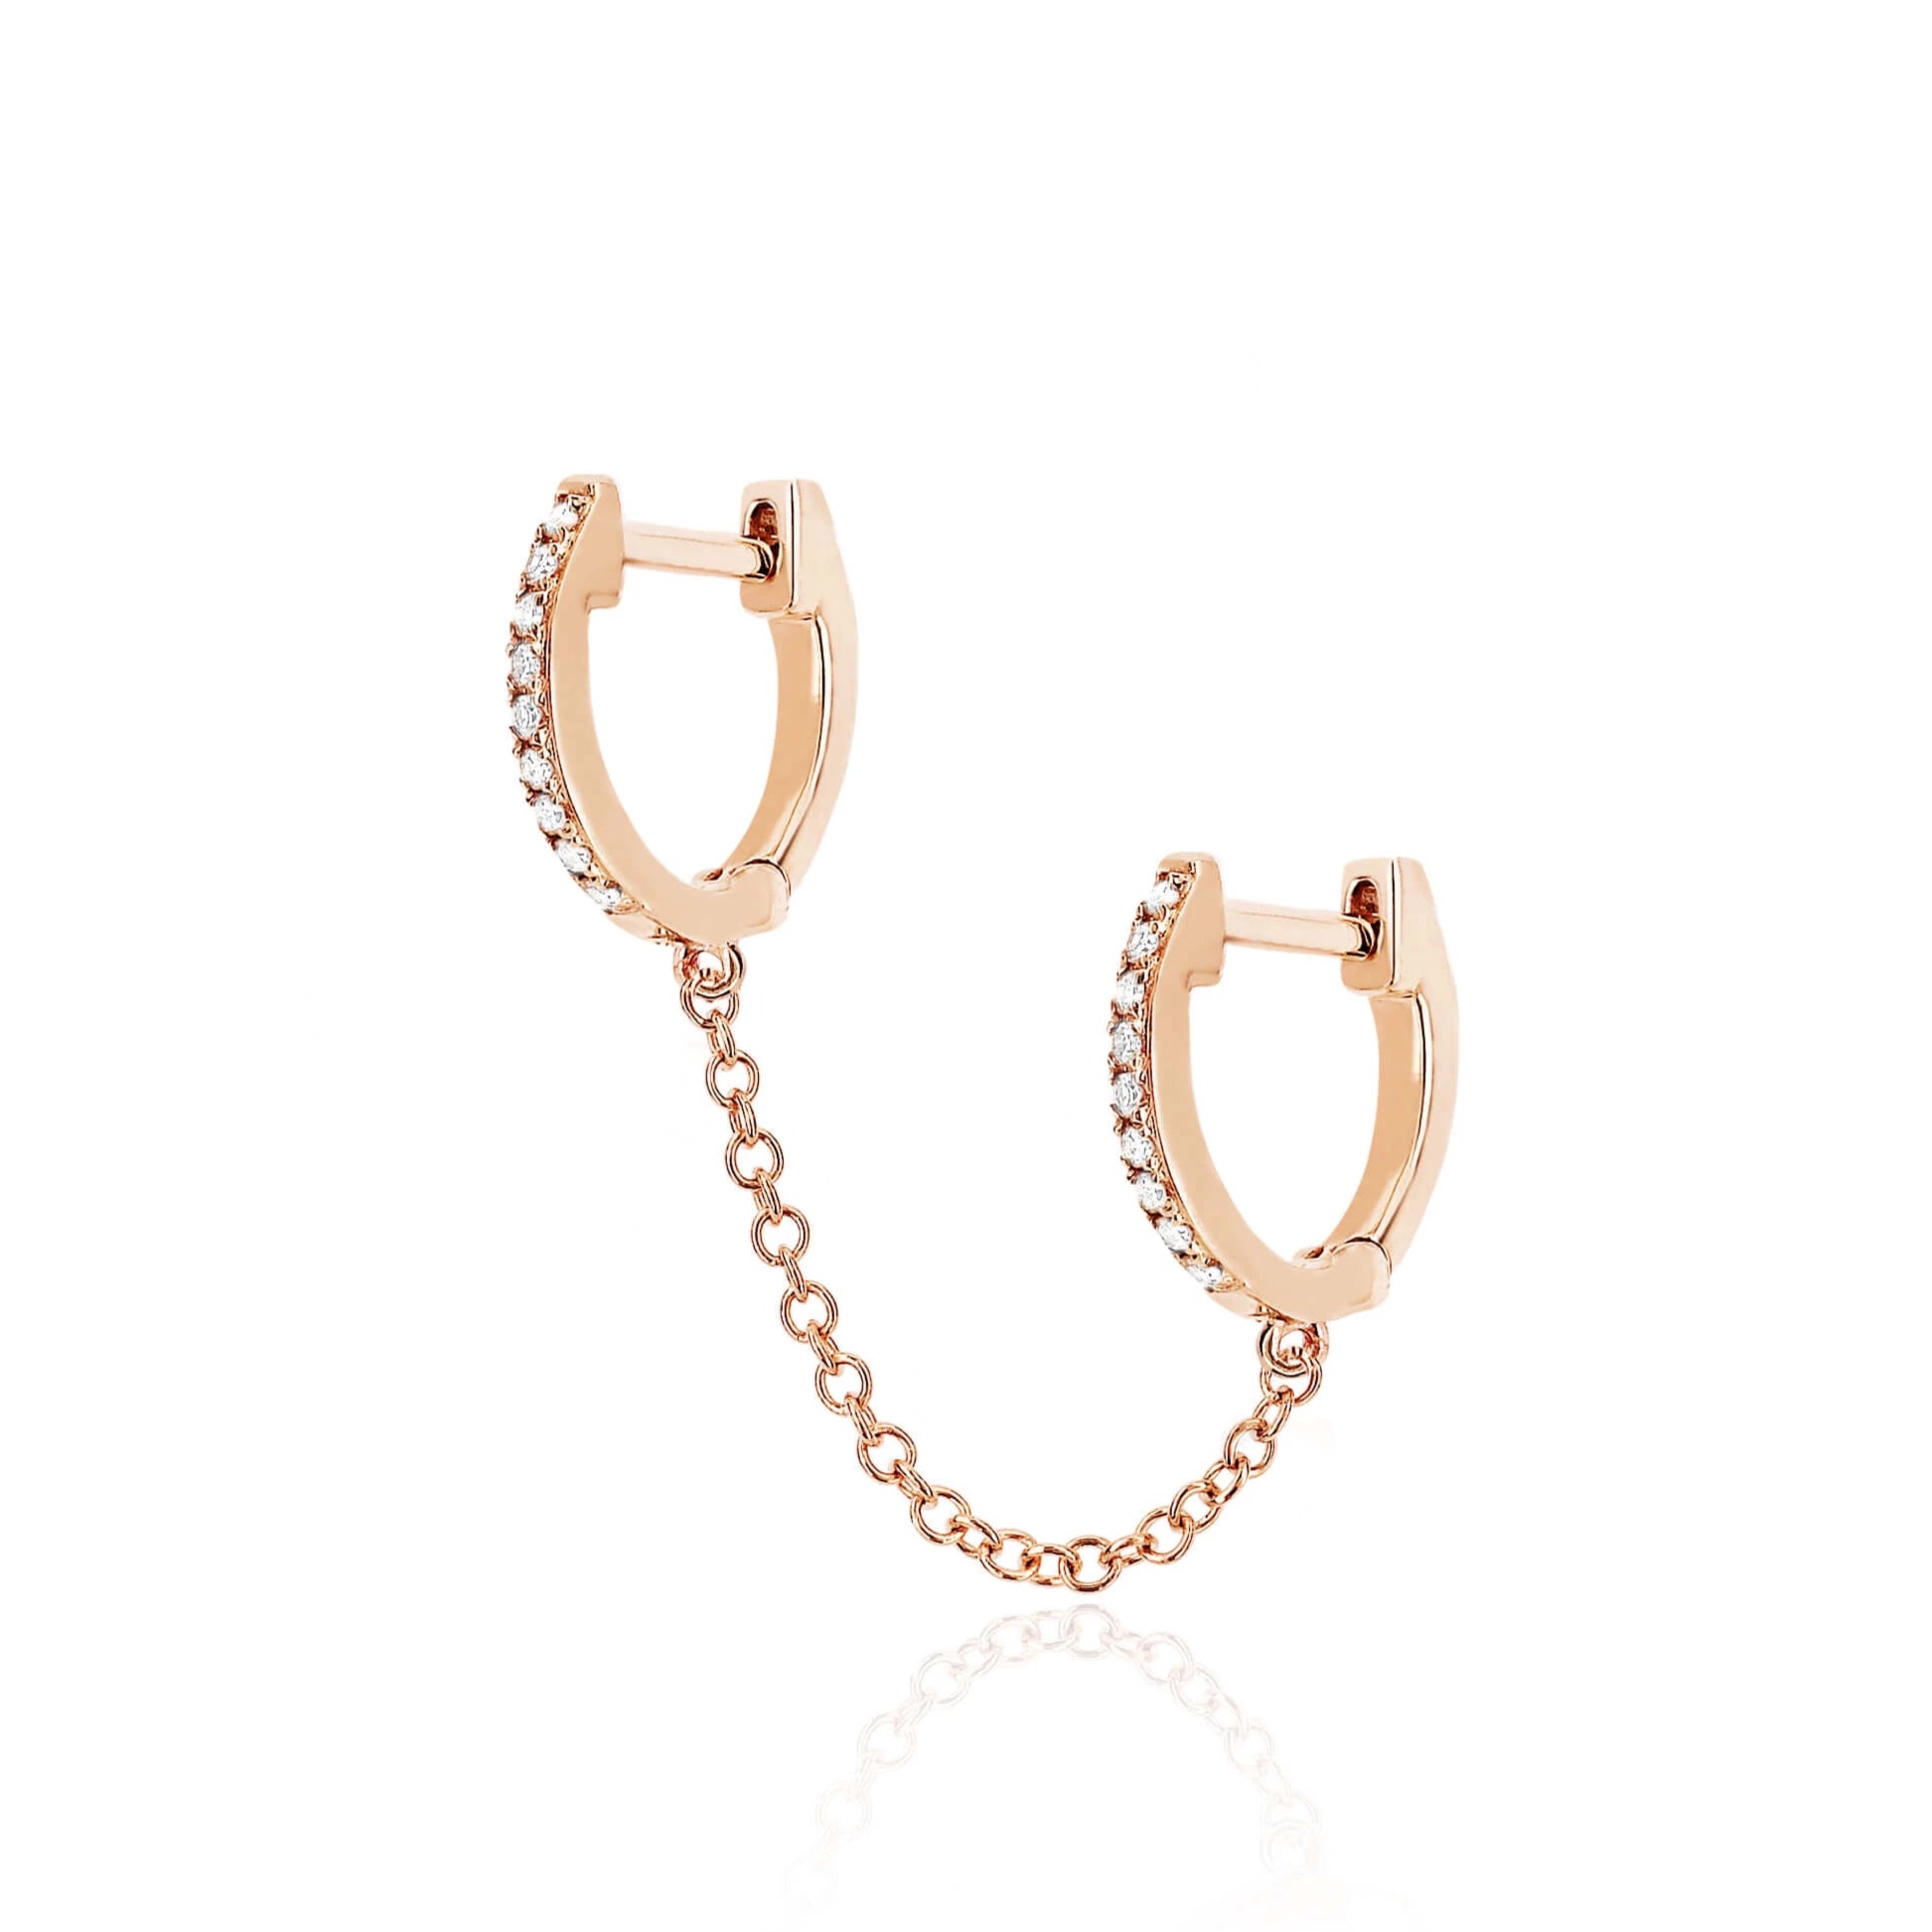 Buy Pair of Linked Hoop Earrings for Multiple Piercings, Cartilage and  Tragus Piercings. in Gold, Silver or Rose Gold. Chain Huggies Earrings.  Online in India - Etsy